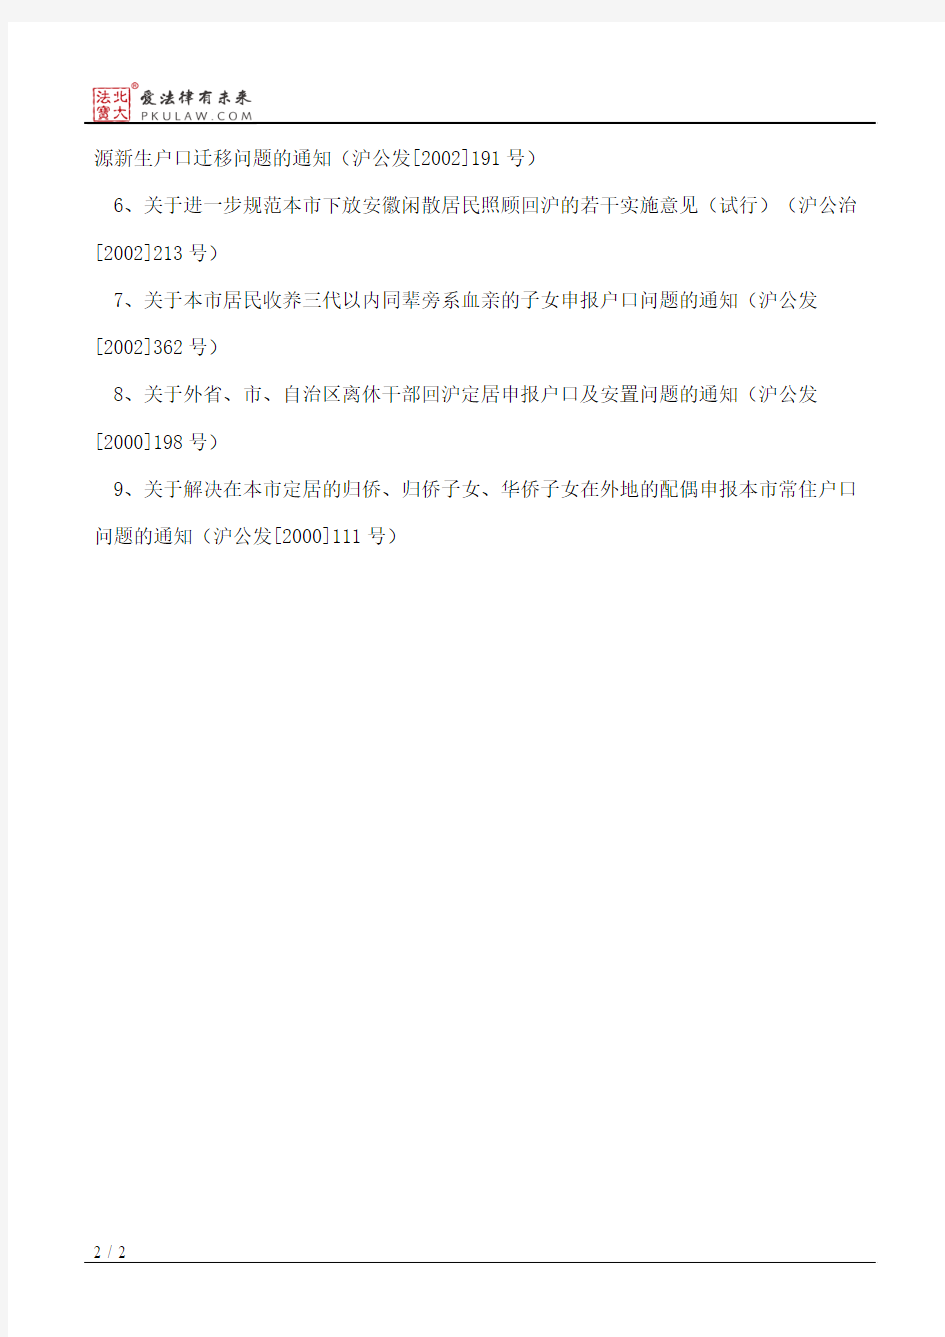 上海市公安局关于废止部分市局规范性文件的通知(2010)